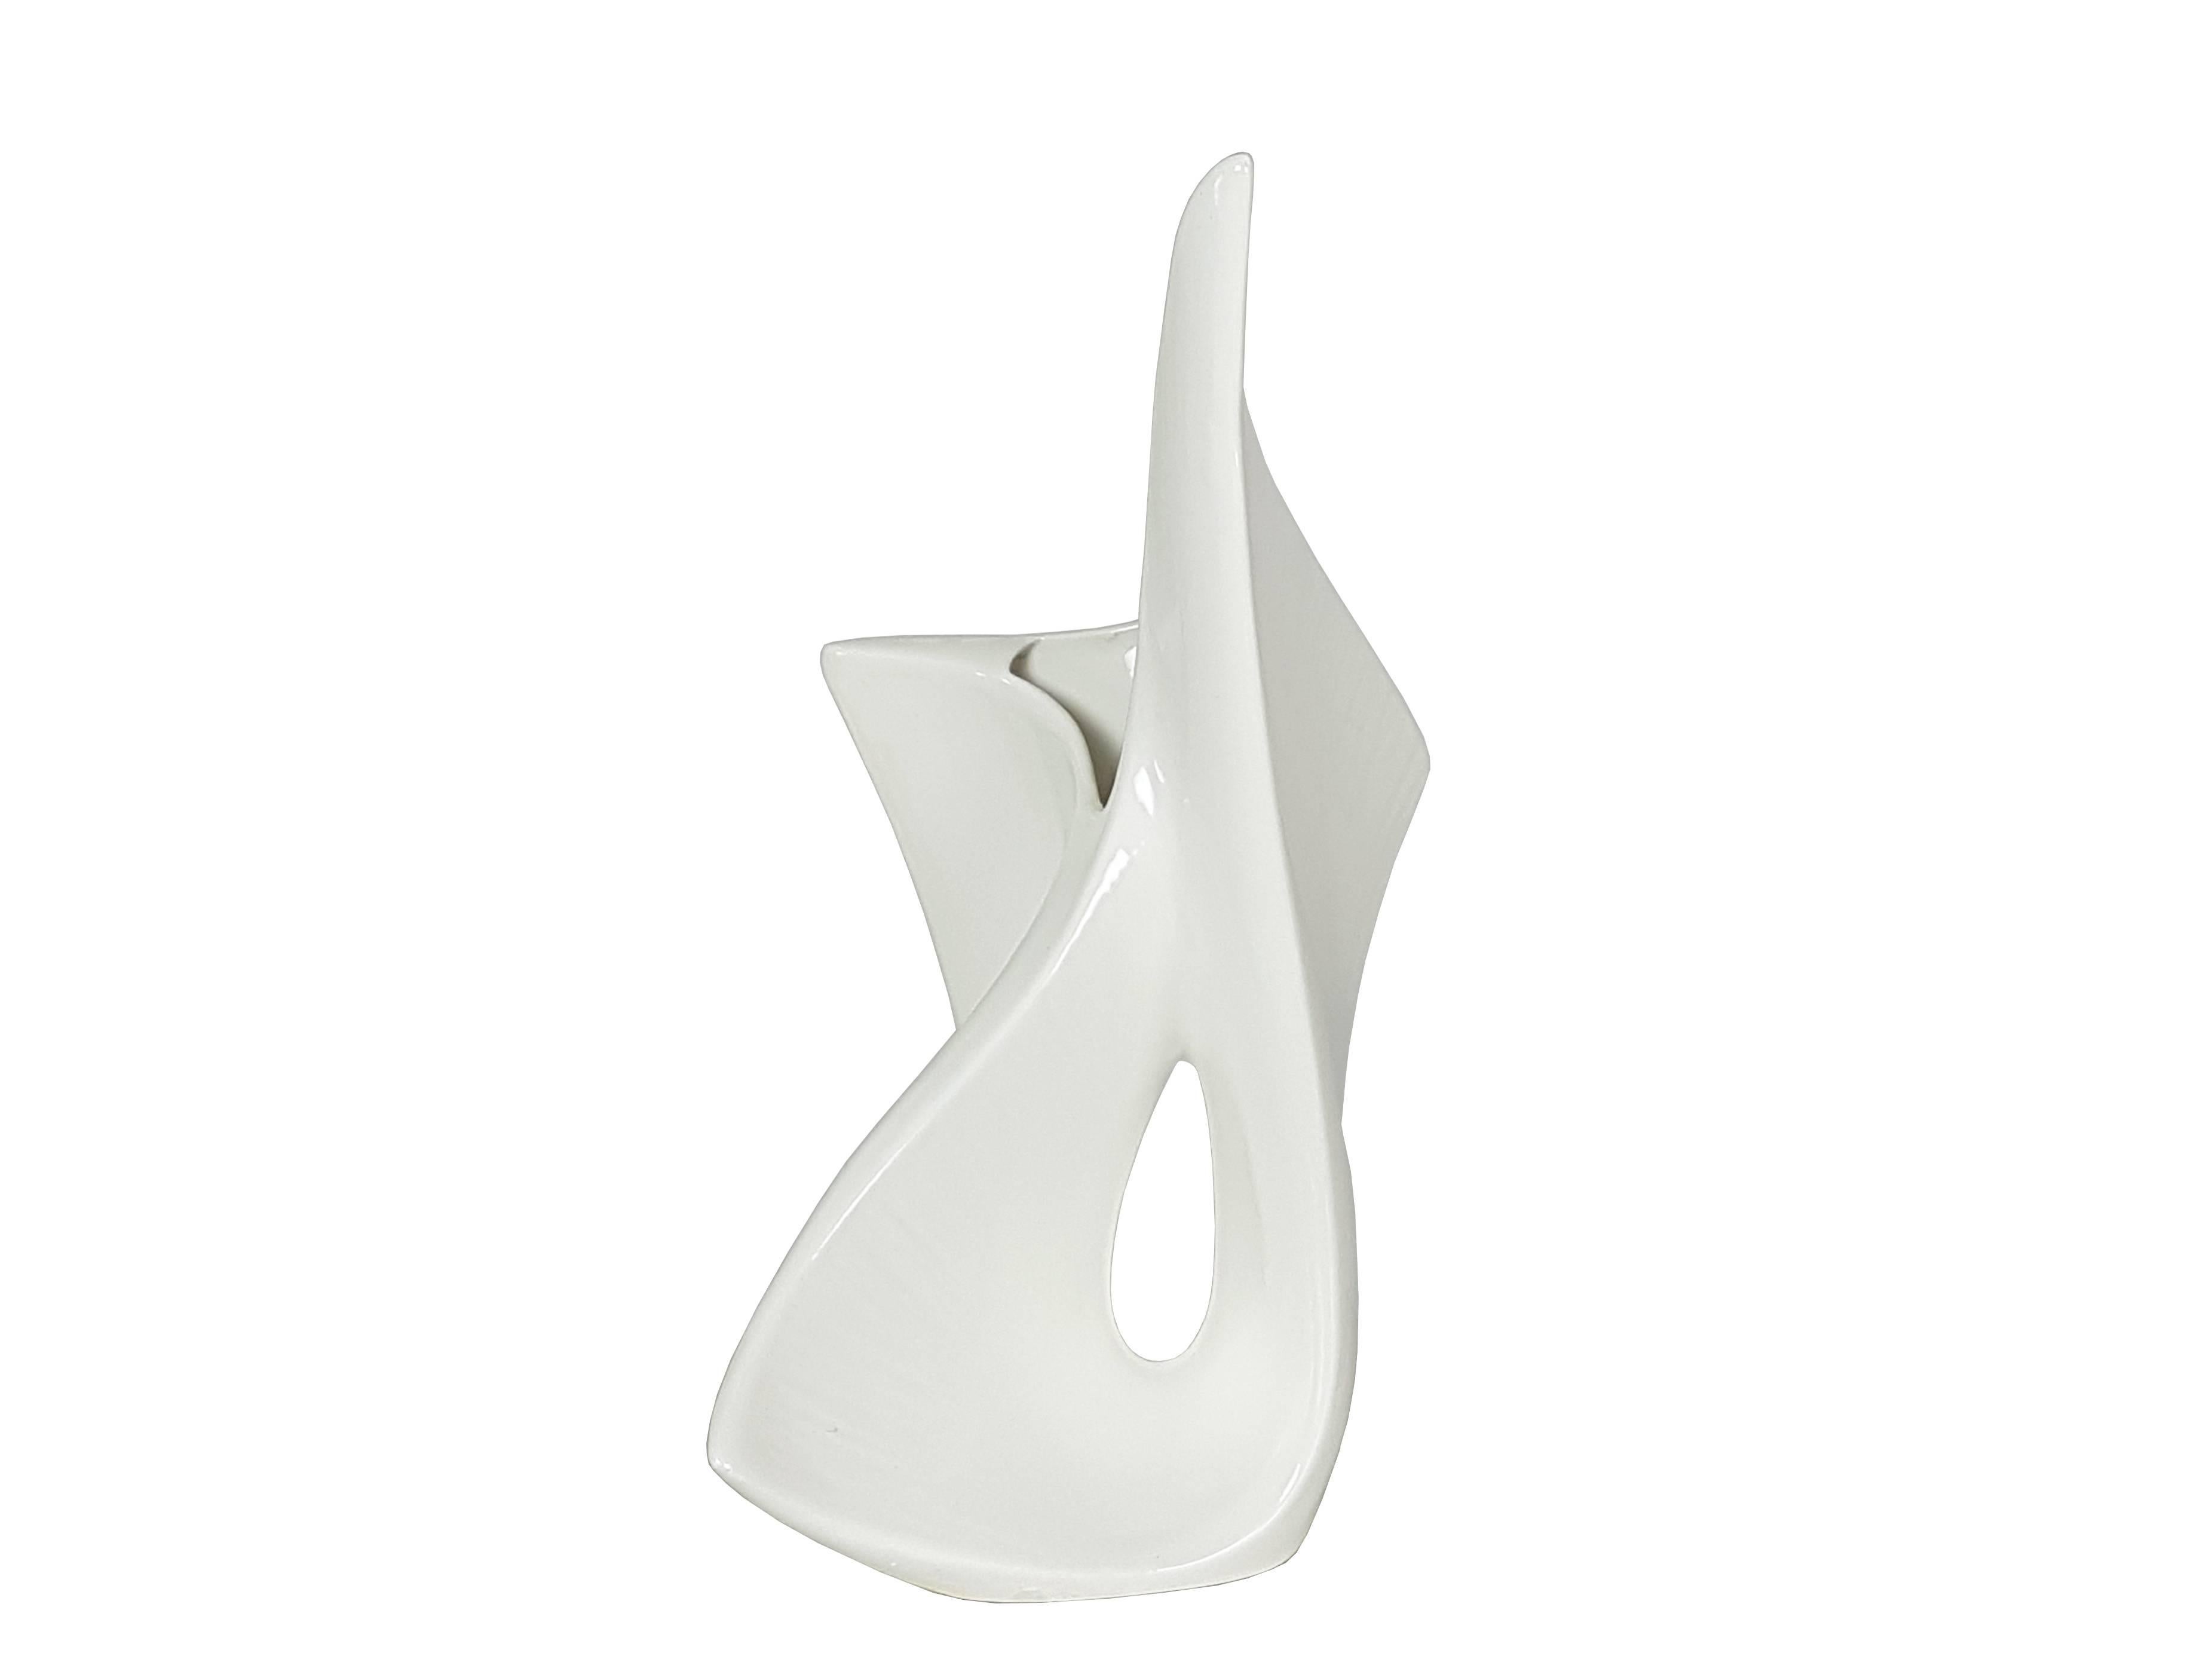 Mid-Century Modern Italian Sculptural White Ceramic Vase from Vibi, 1950s For Sale